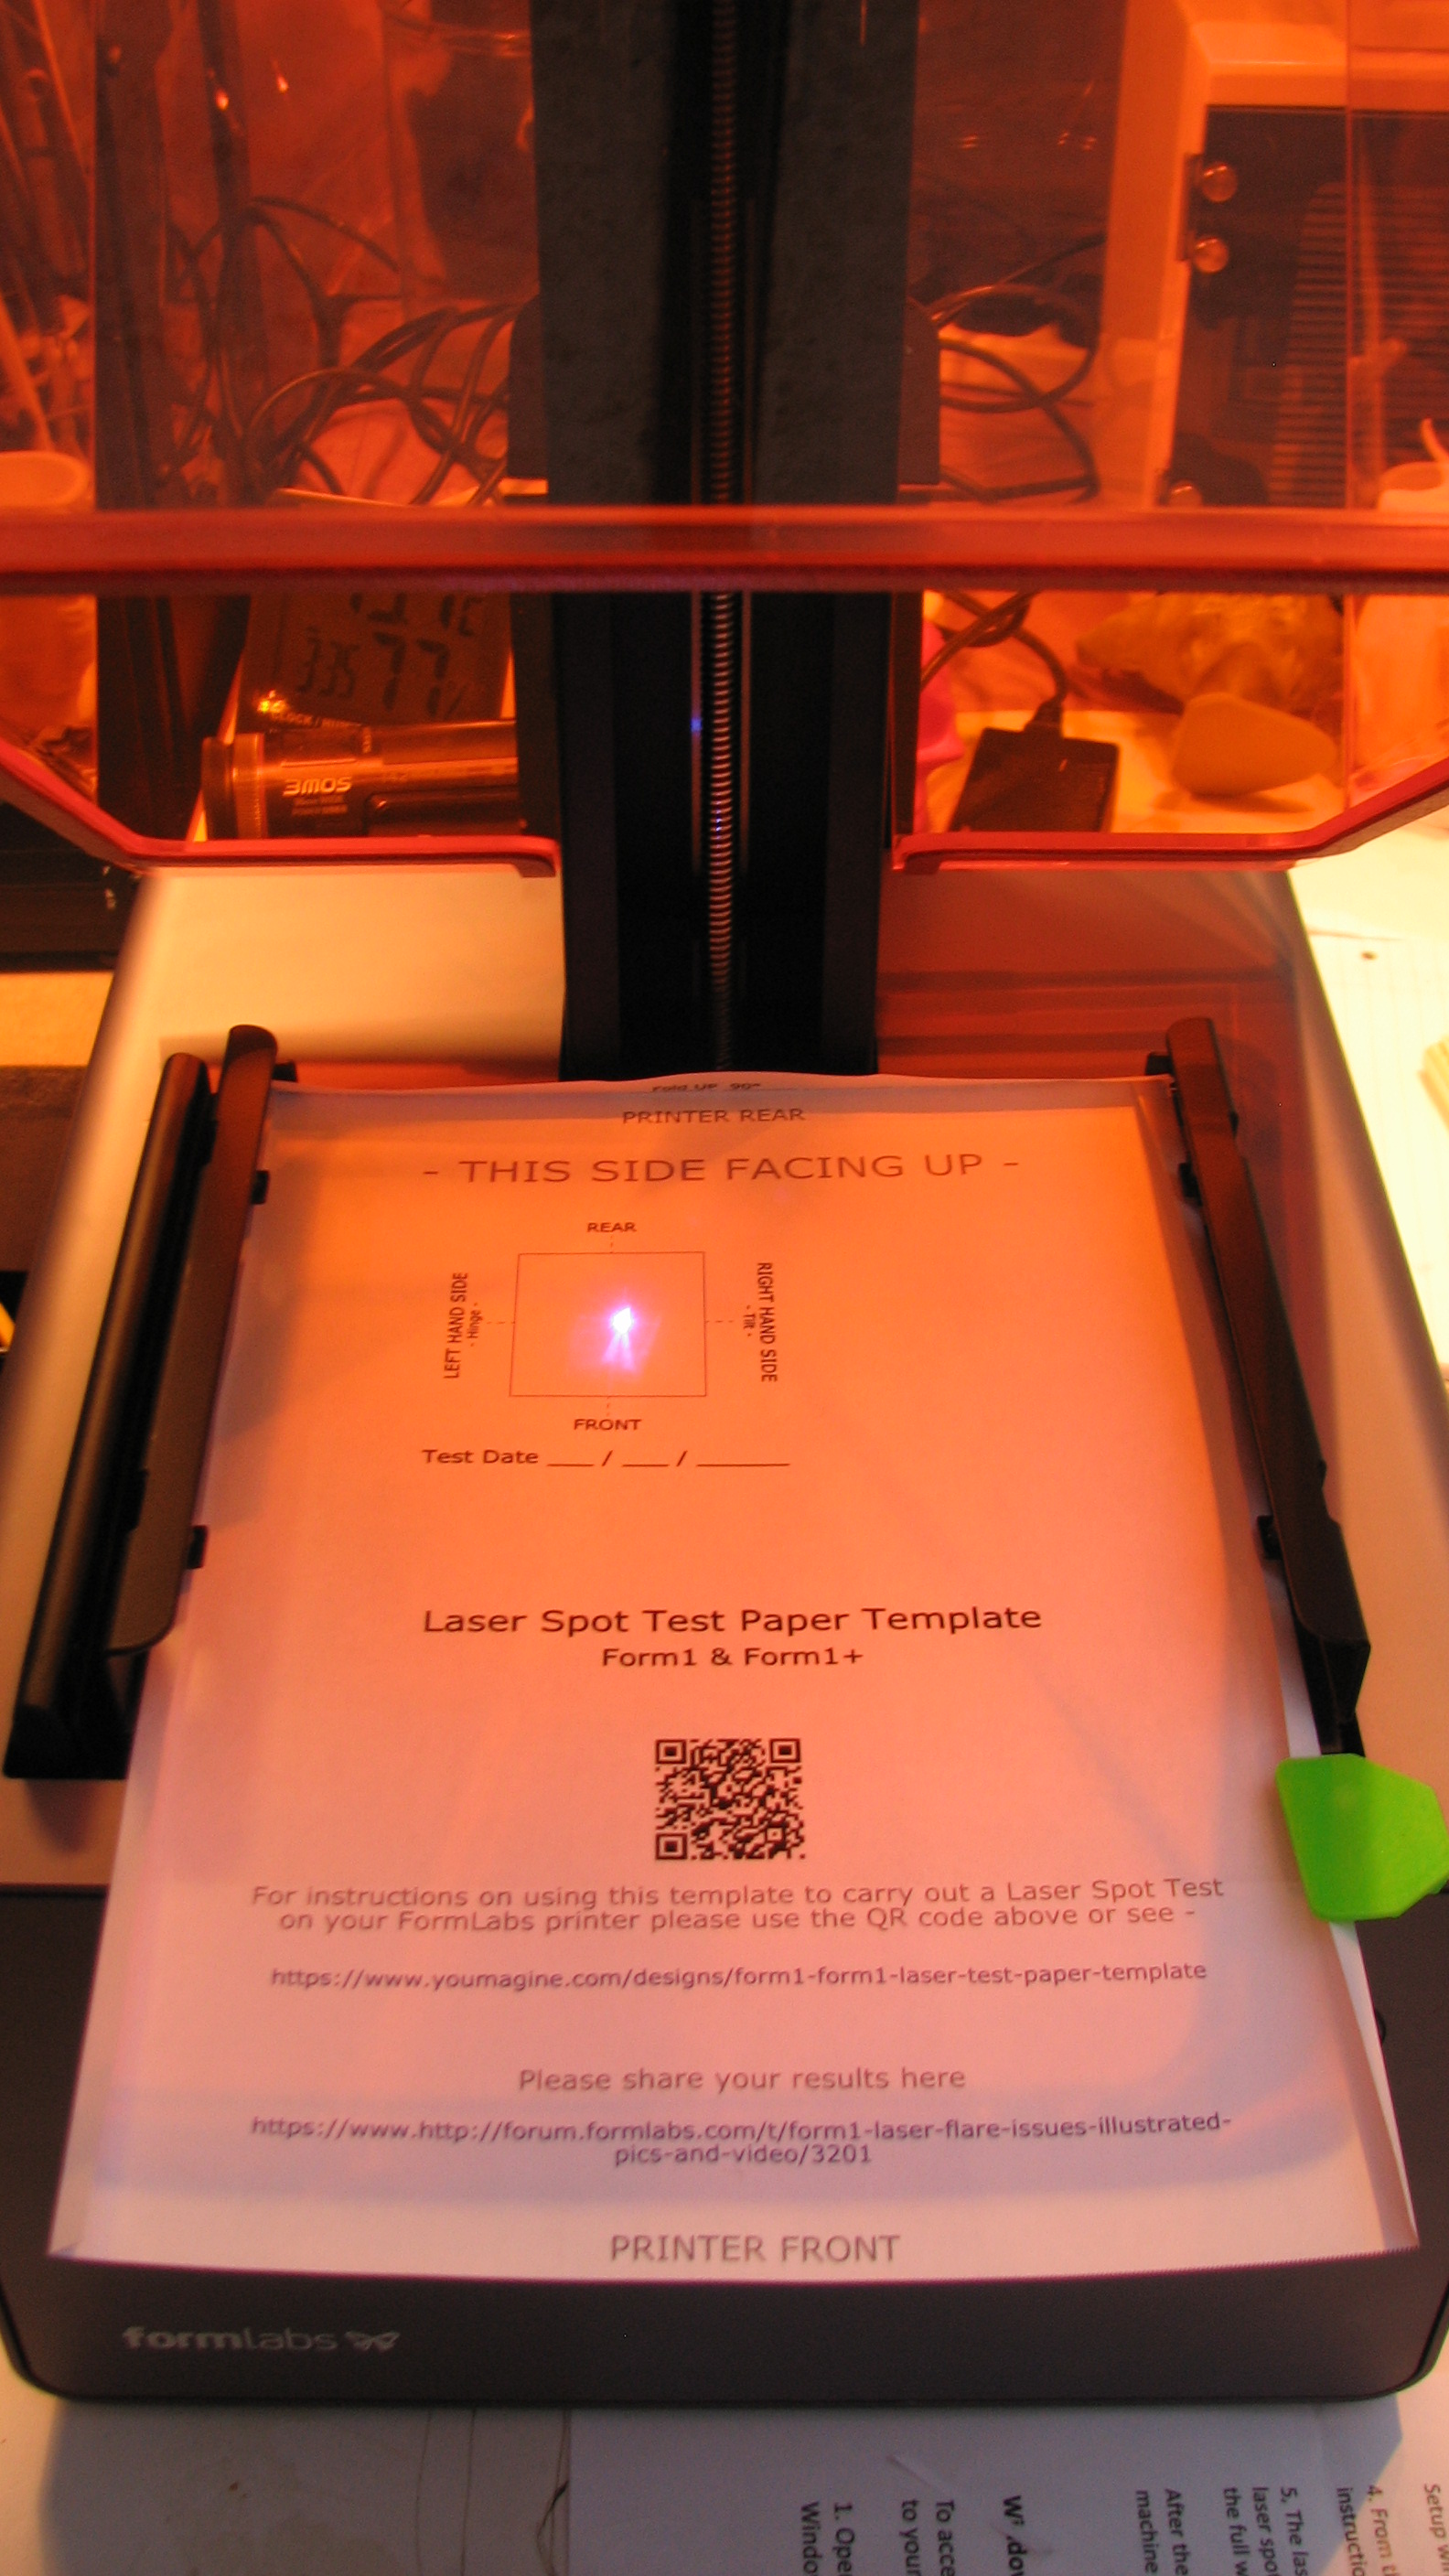 Form1 / Form1+ Laser Spot Test Paper Template